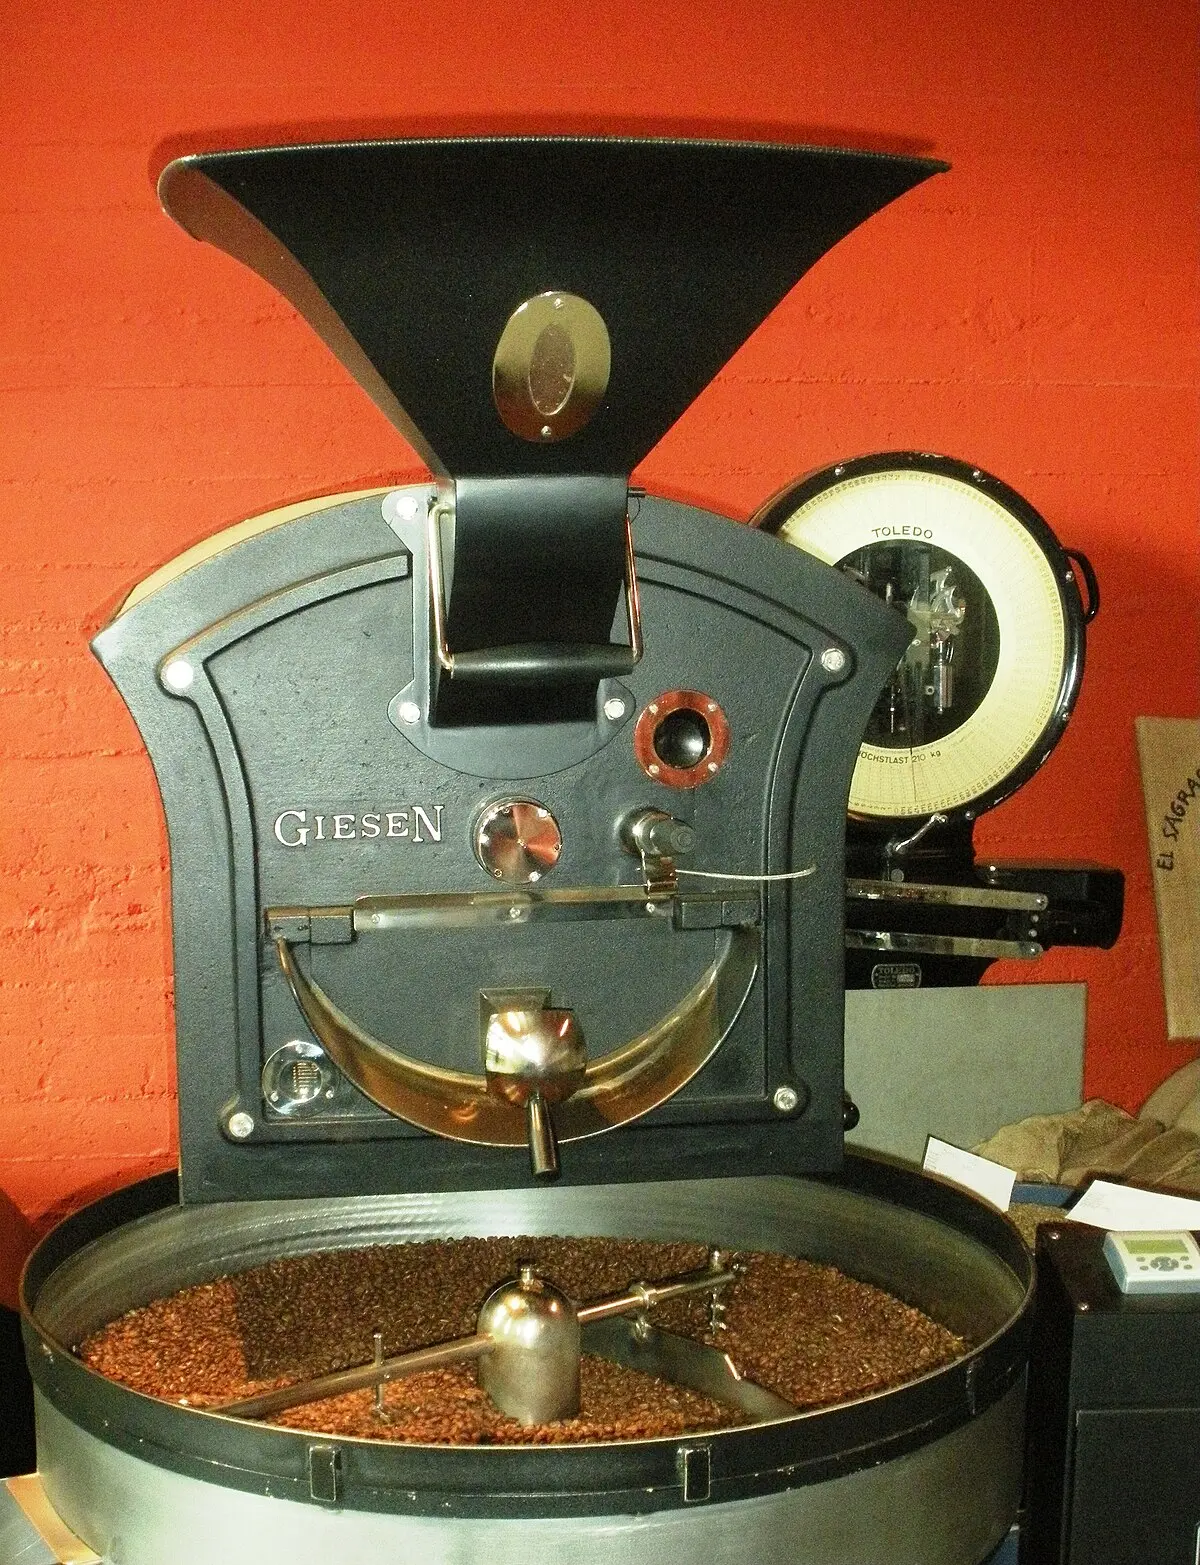 proceso del tostado de cafe - Qué es el proceso de tueste